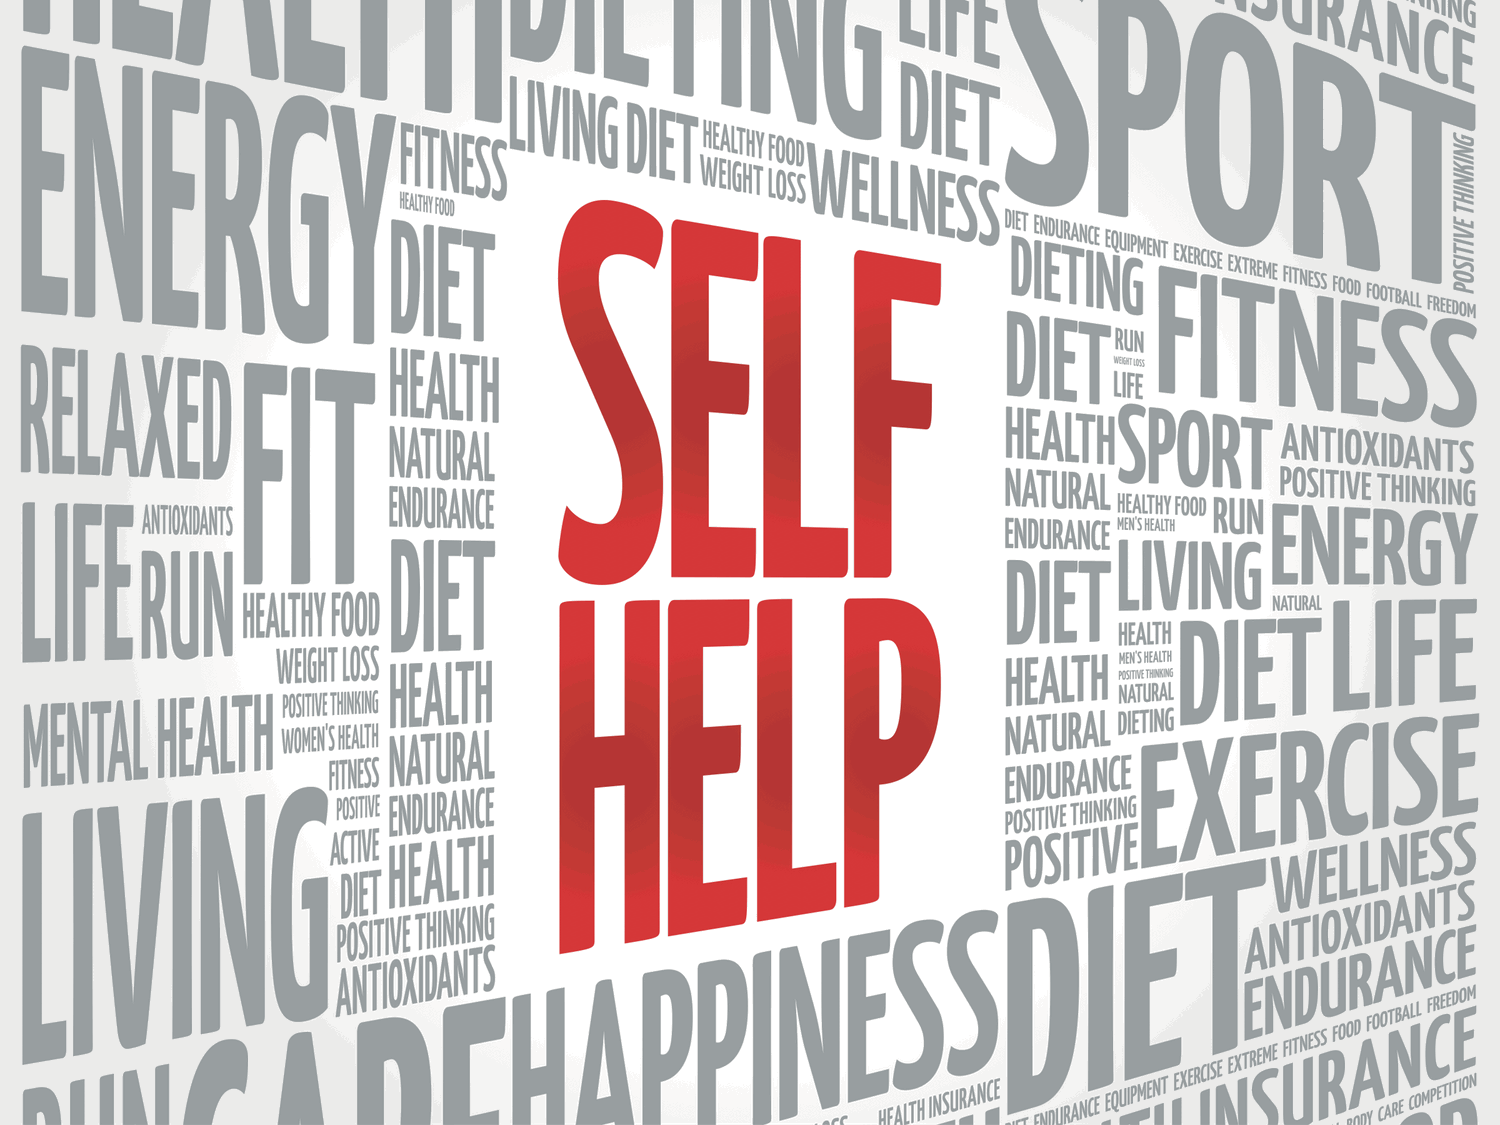 self-help